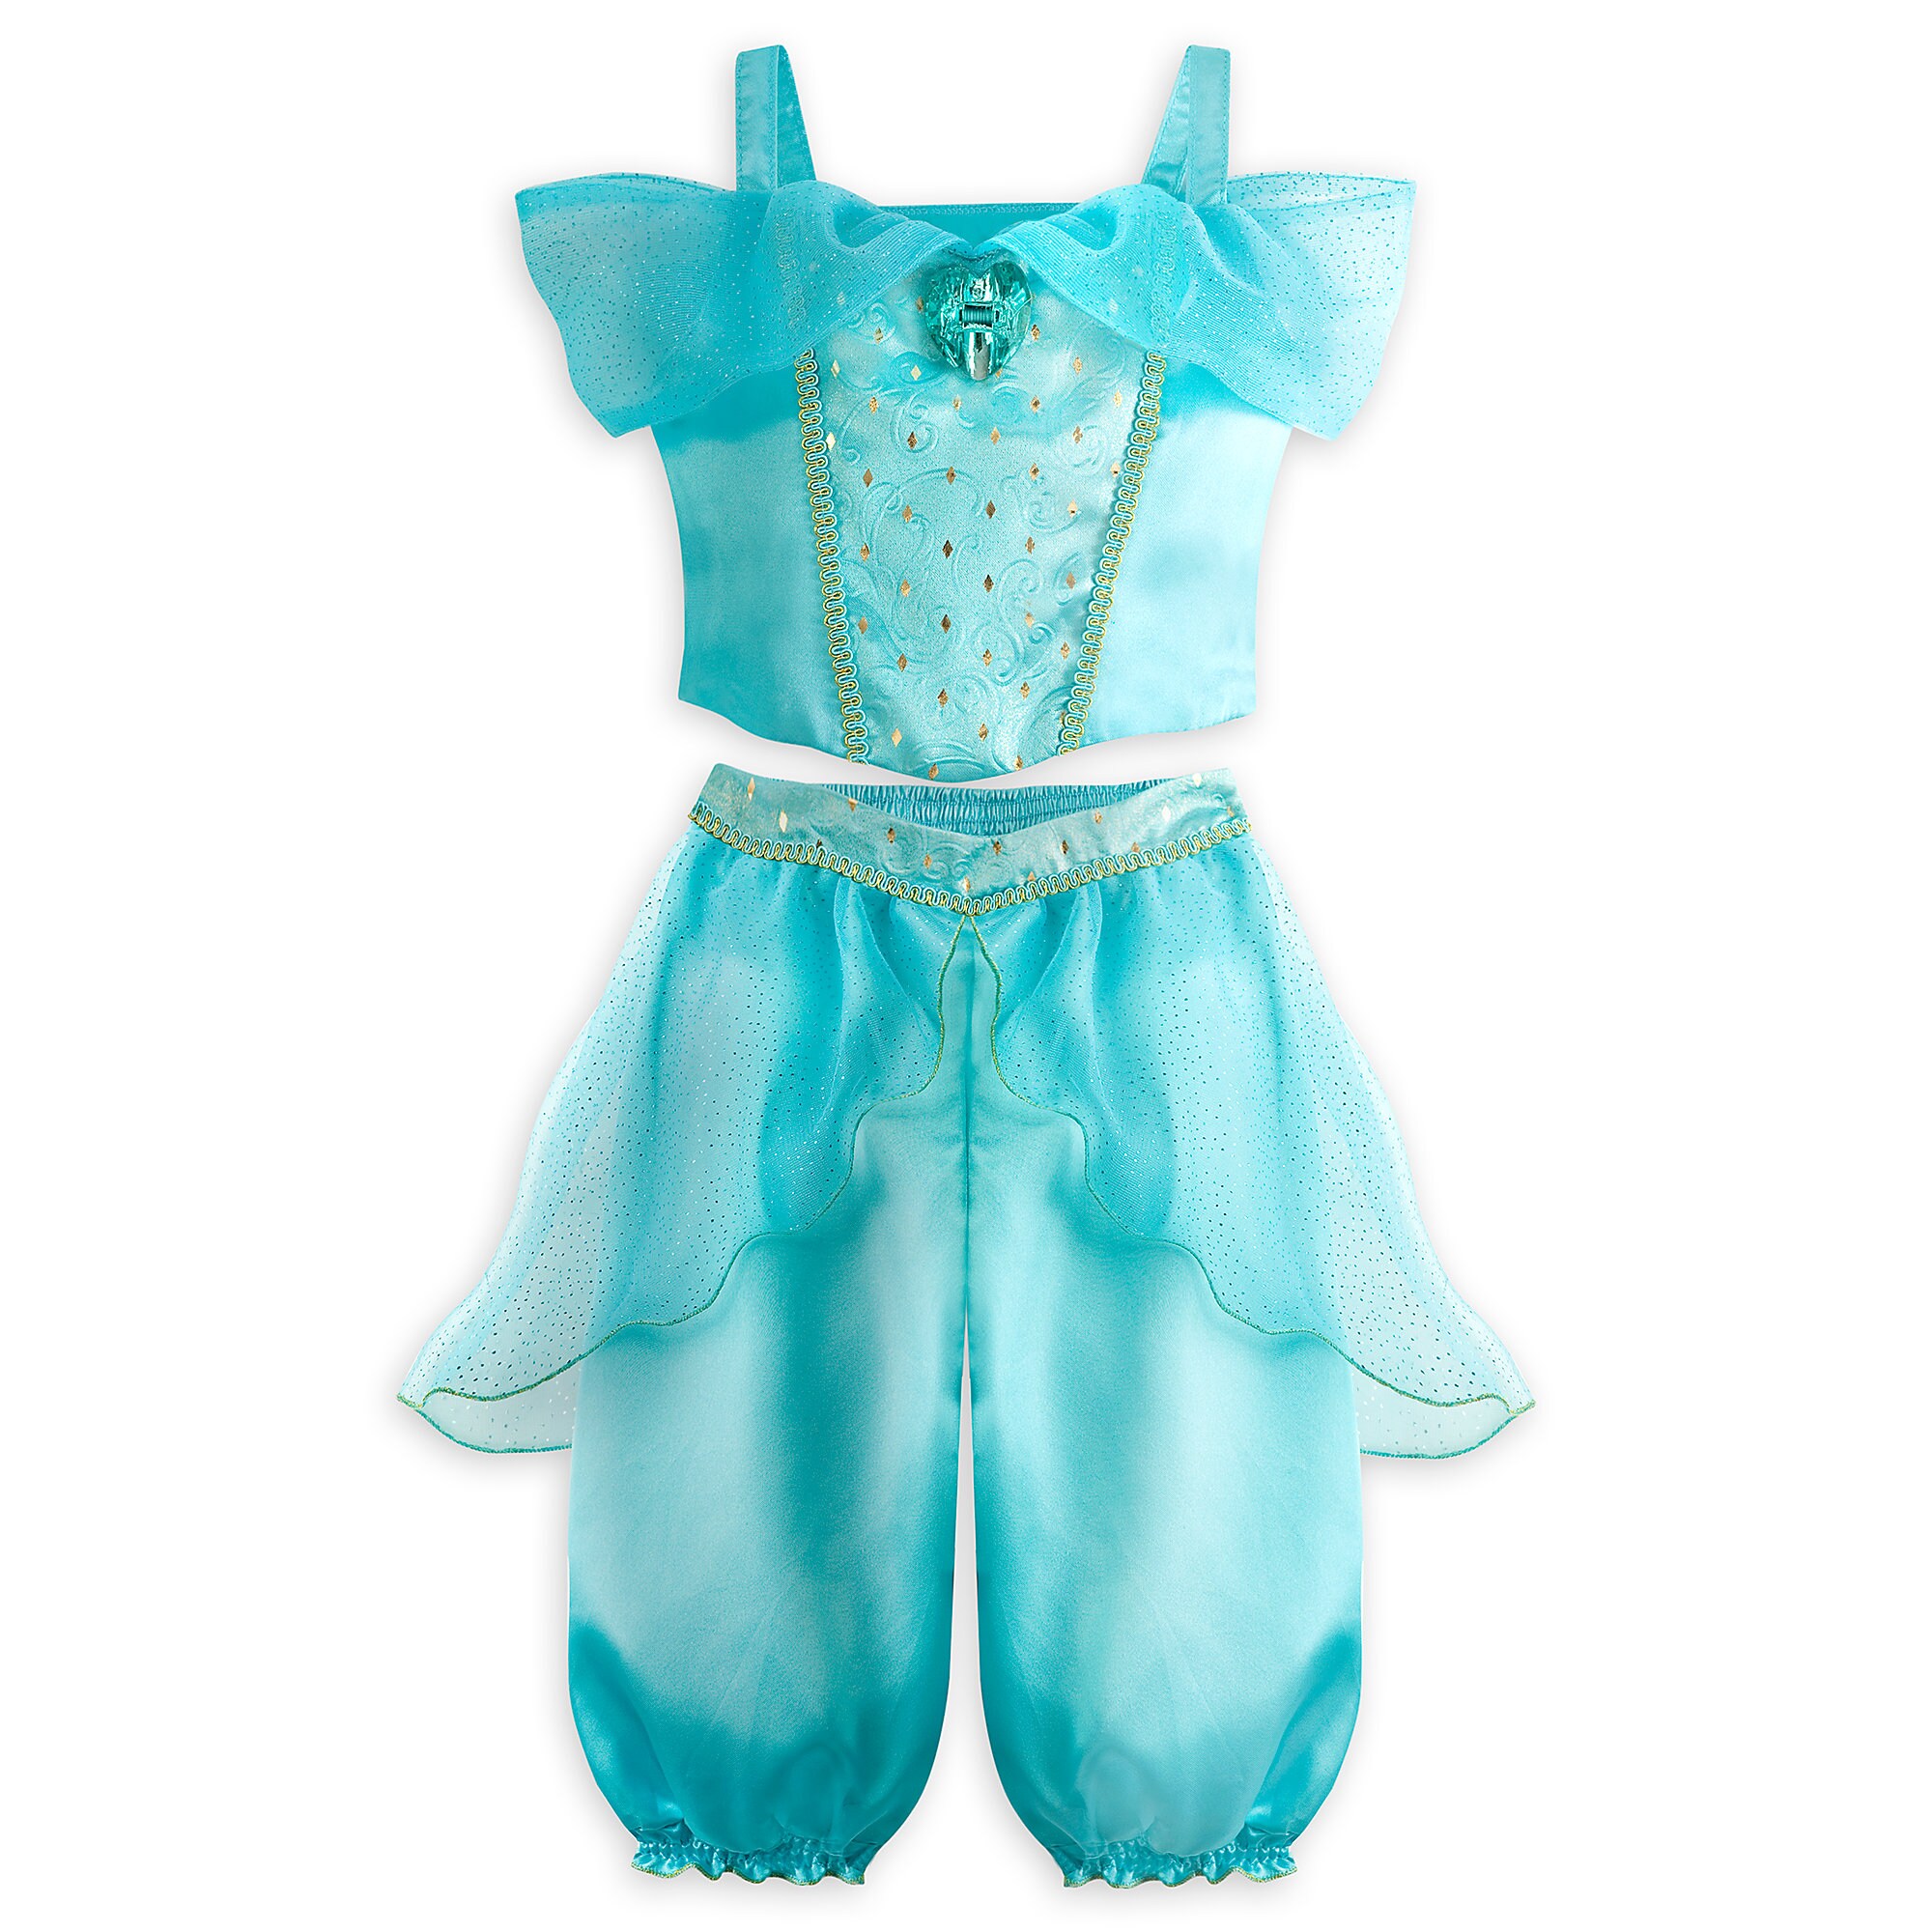 Jasmine Costume for Baby - Aladdin